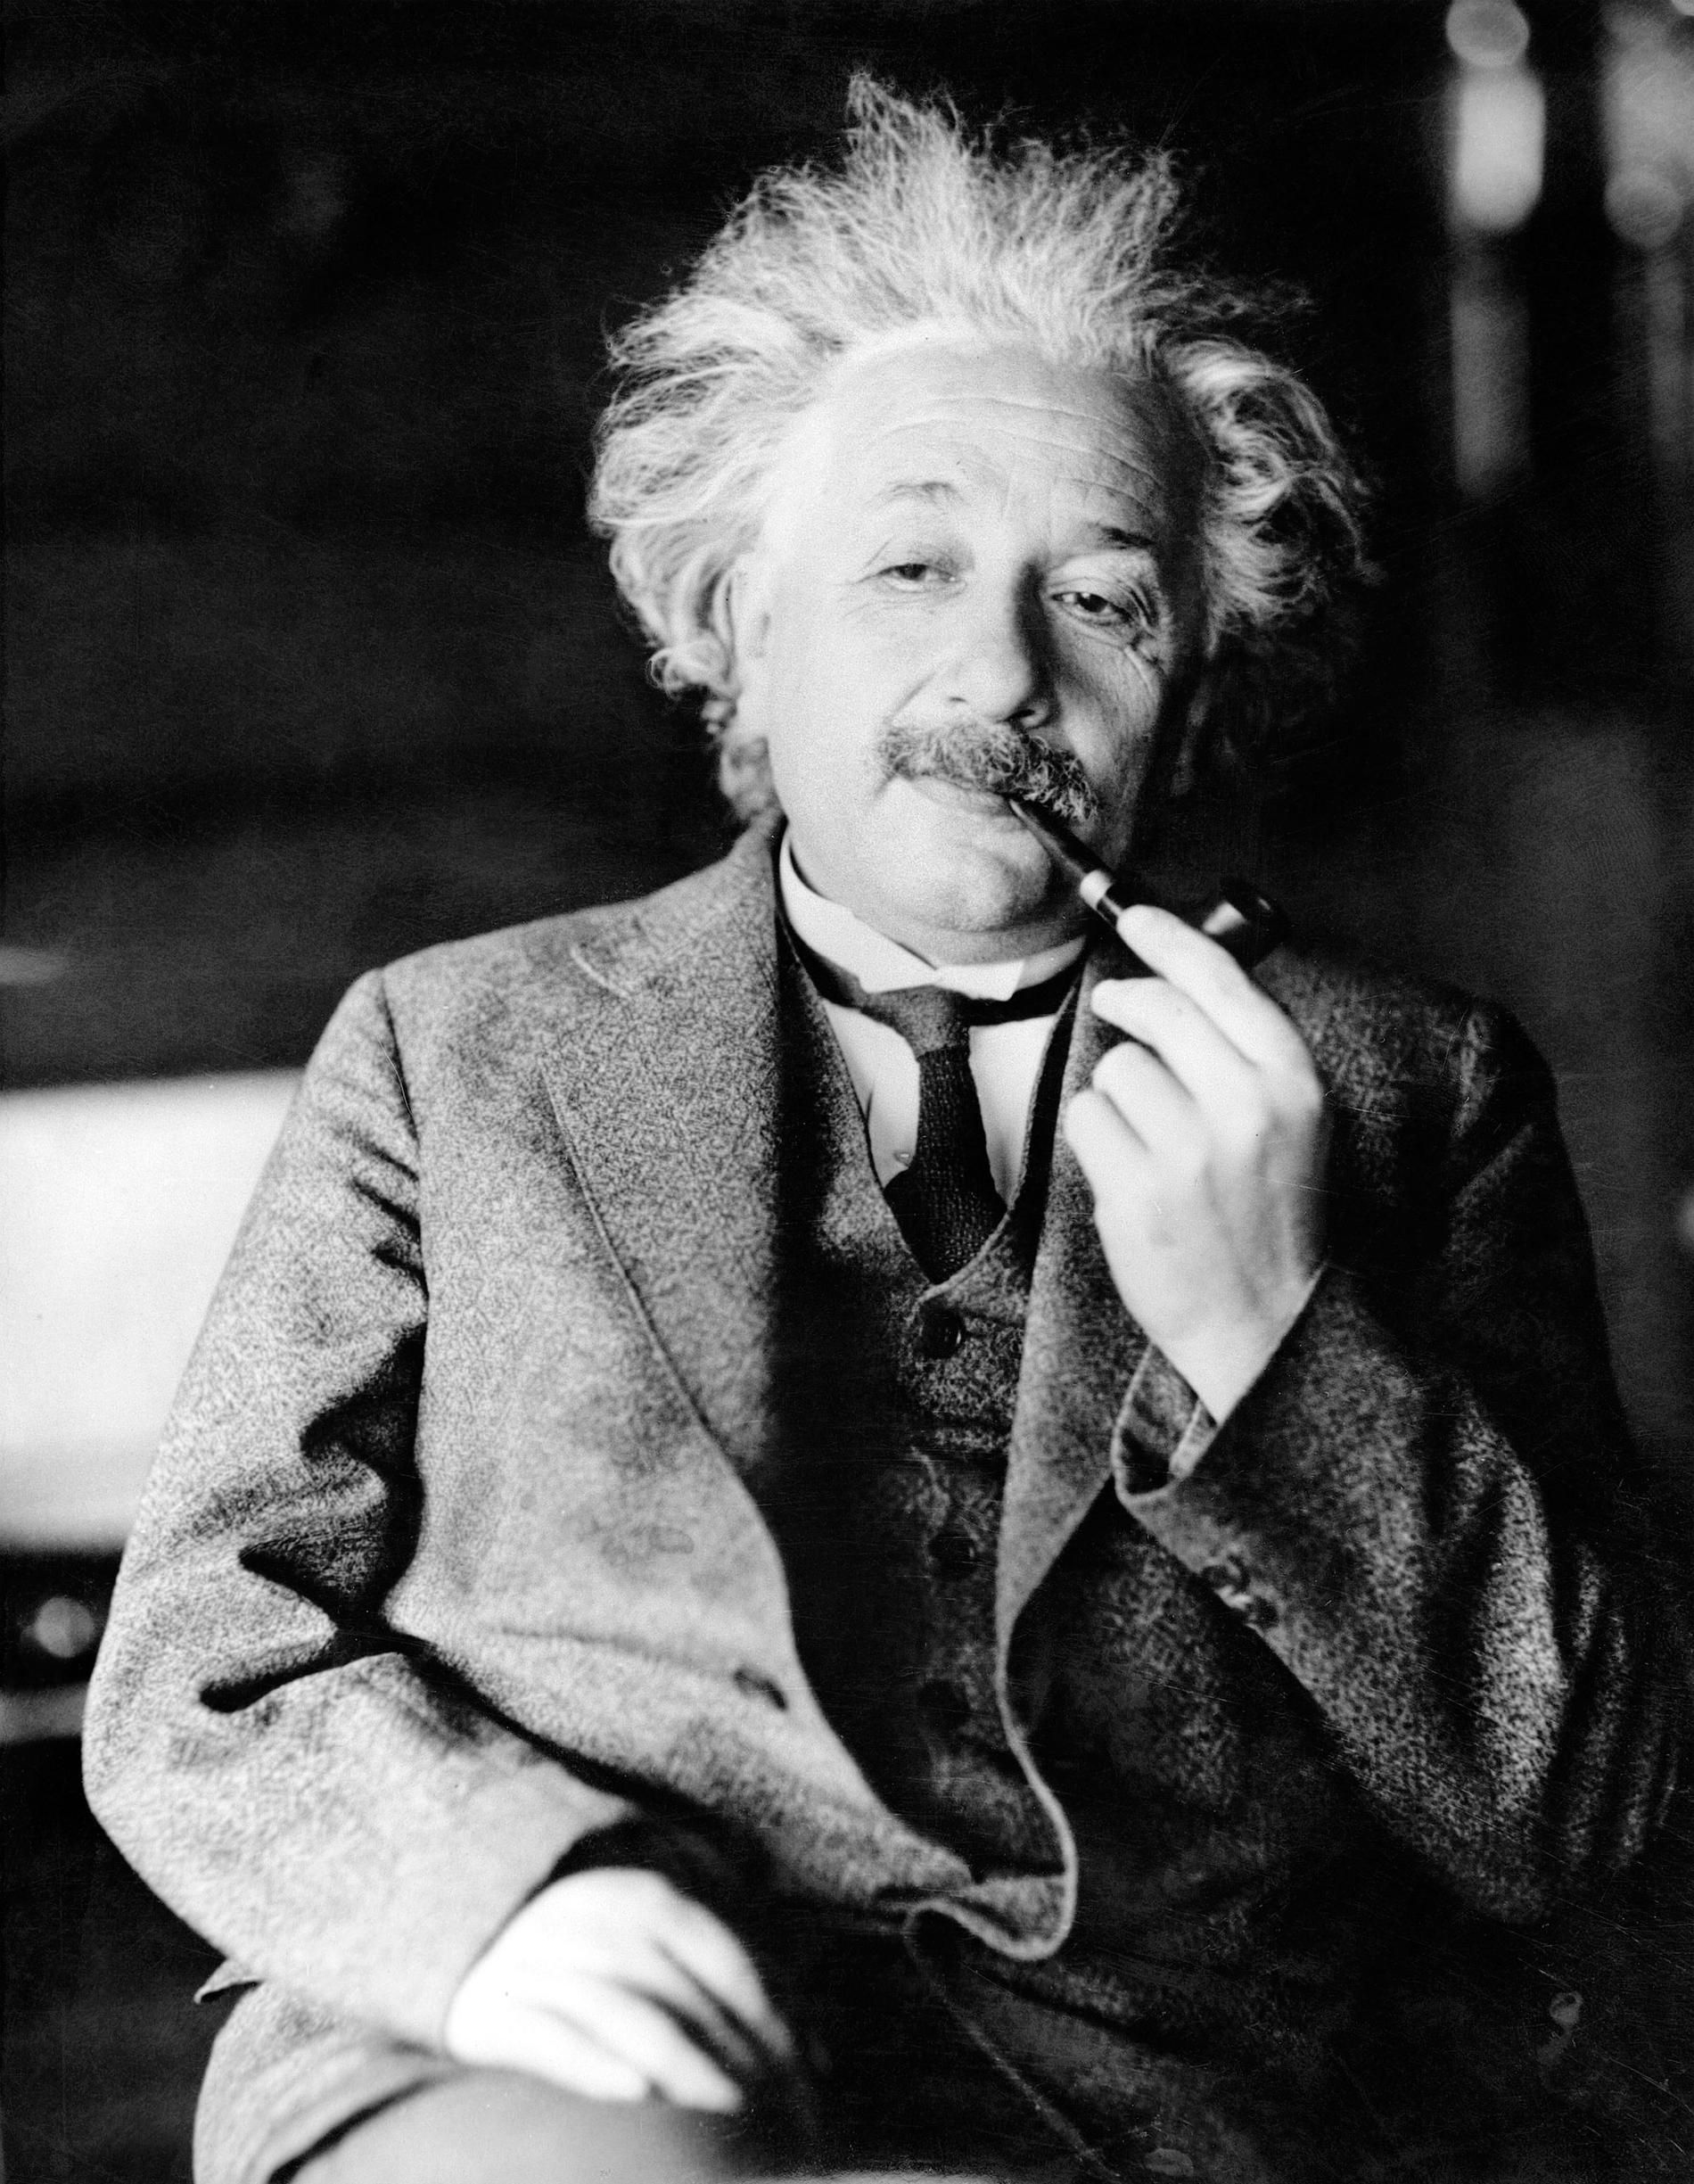 Den legendariske fysikern Albert Einstein, författare av relativitetsteorin. På denna bild ej iklädd sin bruna läderjacka.